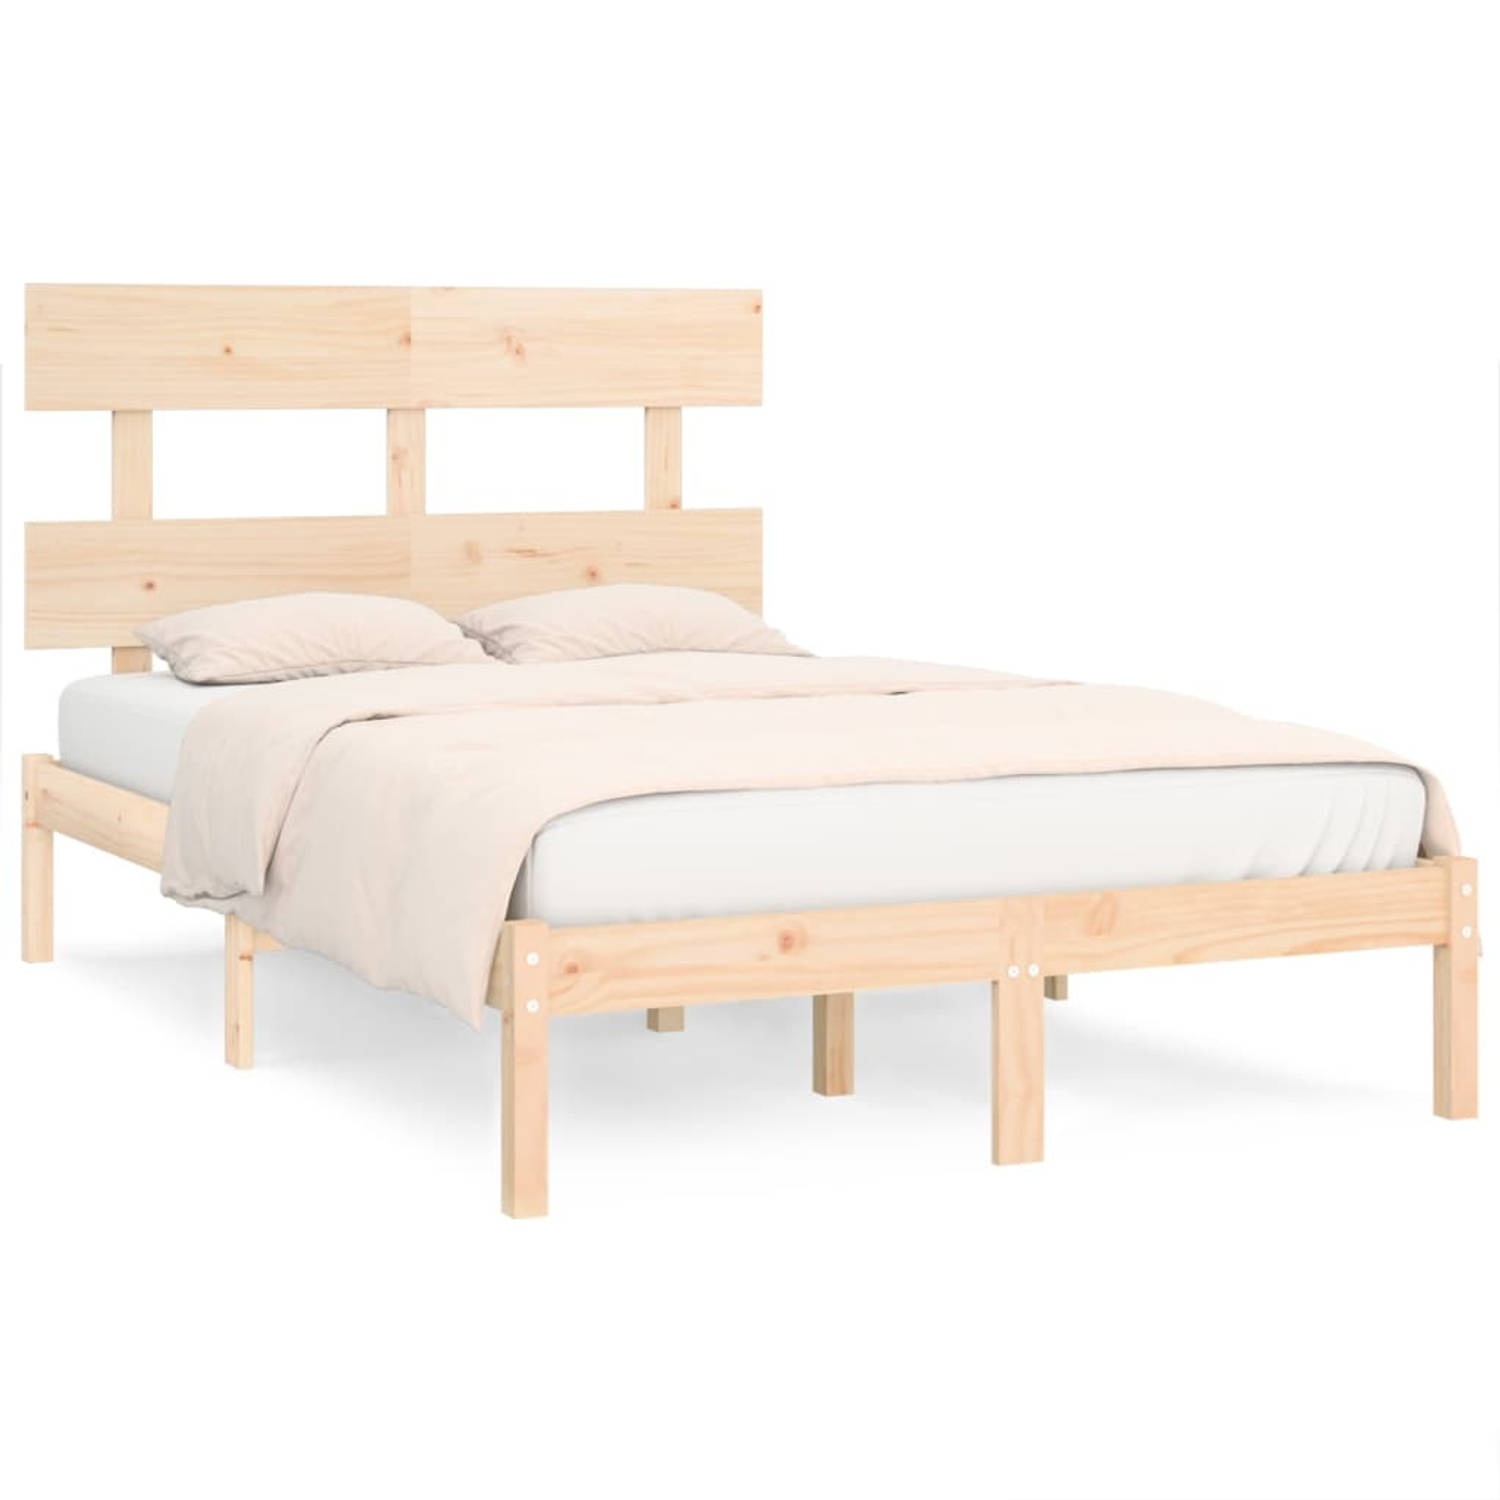 The Living Store Bedframe massief hout 135x190 cm 4FT6 Double - Bedframe - Bedframes - Tweepersoonsbed - Bed - Bedombouw - Dubbel Bed - Frame - Bed Frame - Ledikant - Bedframe Met